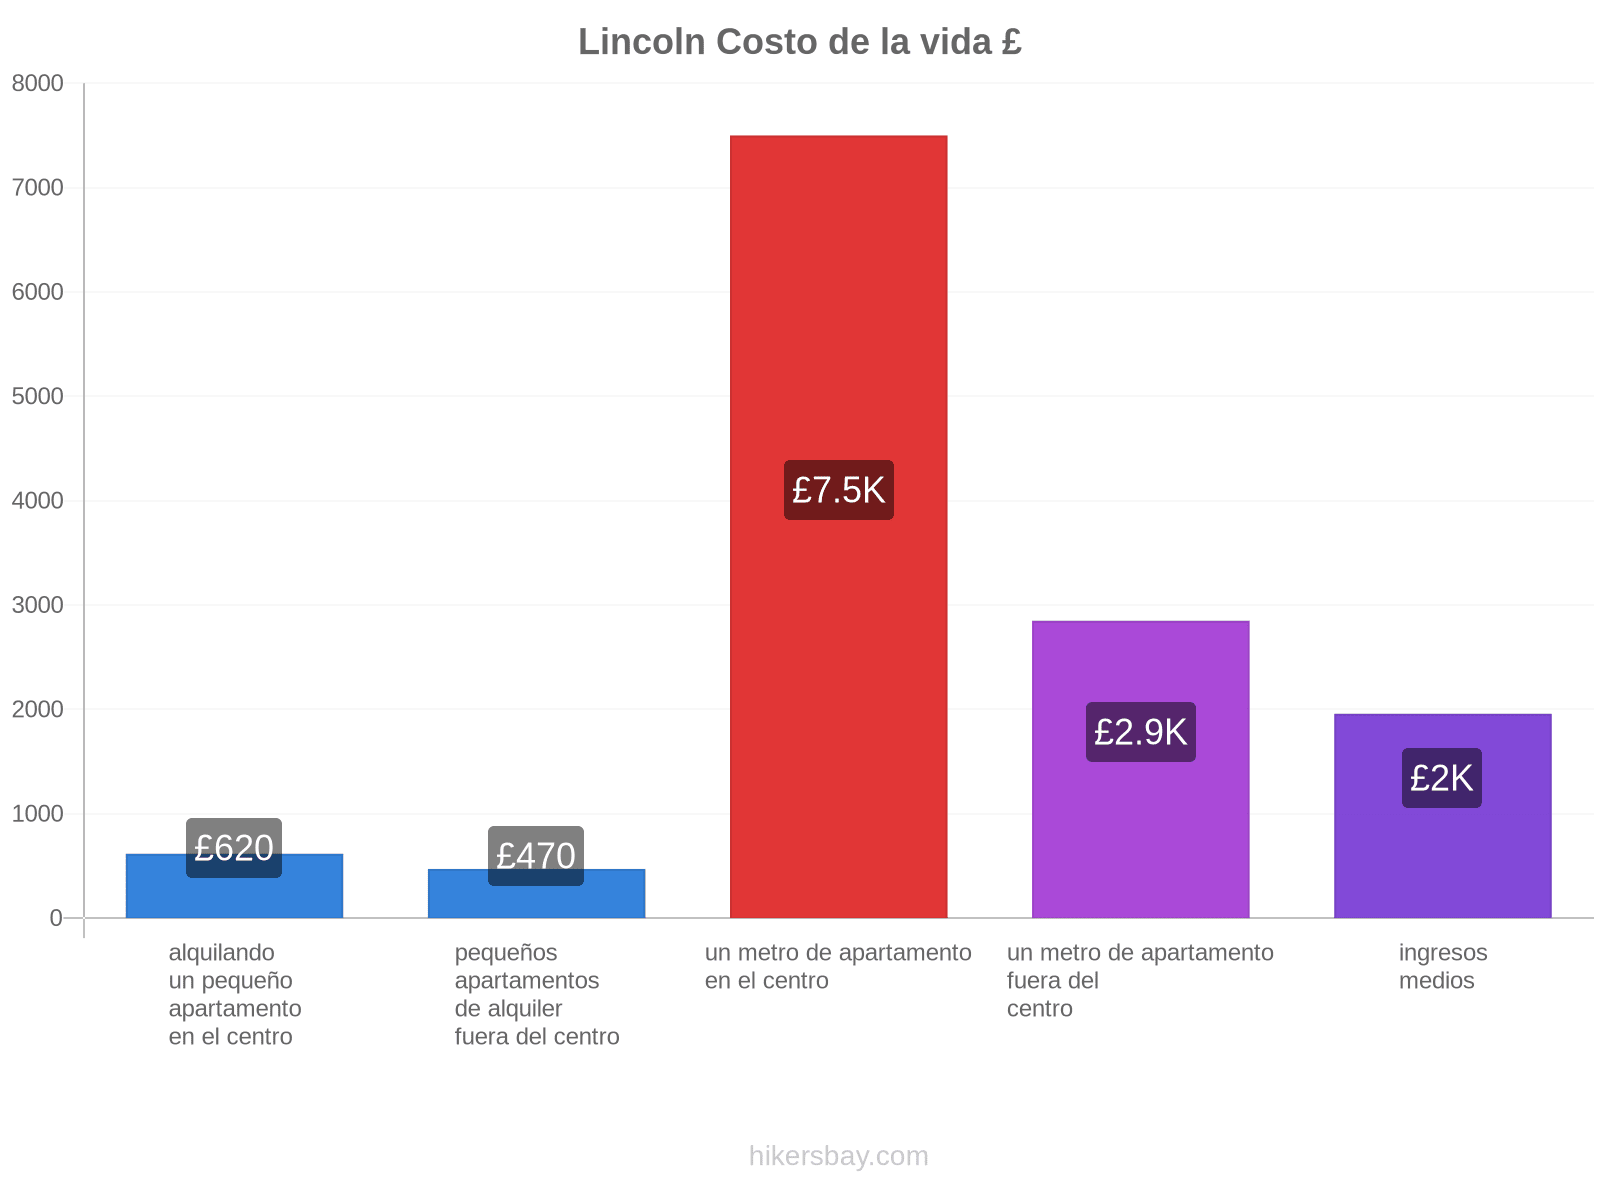 Lincoln costo de la vida hikersbay.com